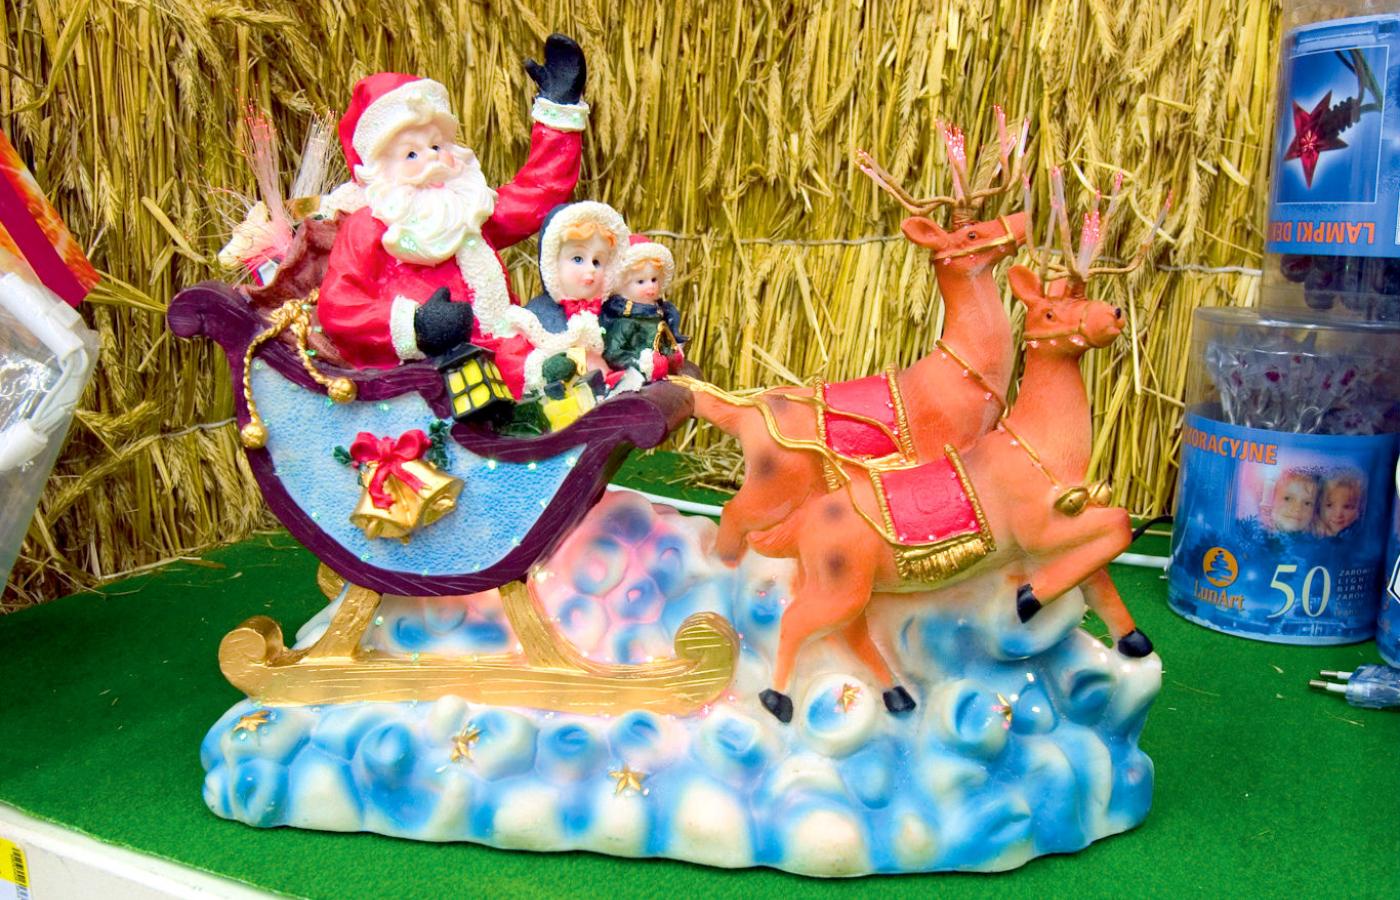 Święty Mikołaj i renifery Bożonarodzeniowy kicz zalewa nas co roku. Ma być elementem
„bajkowej” atmosfery świąt.